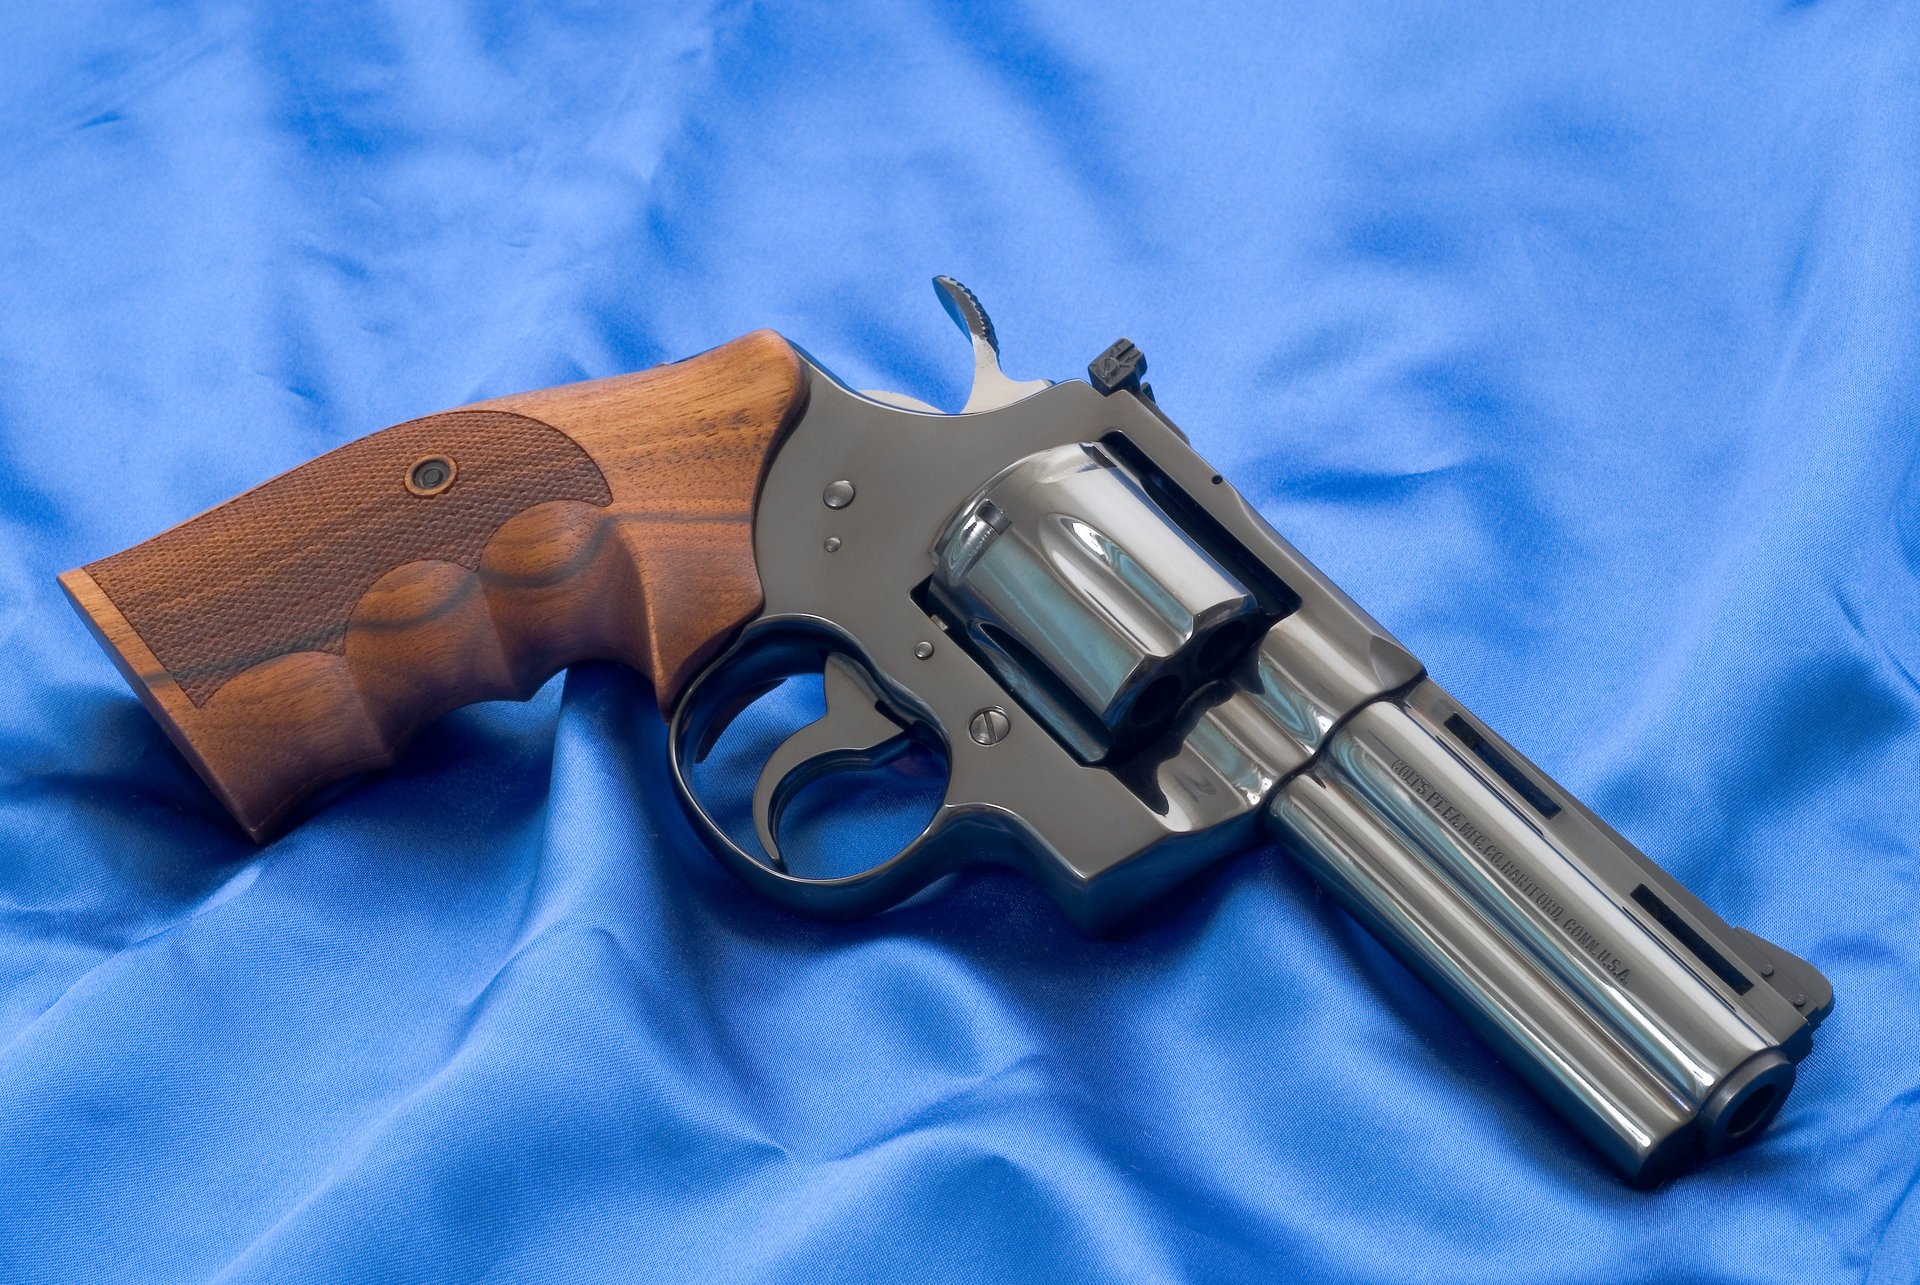 Weapon revolver gun 357 magnum